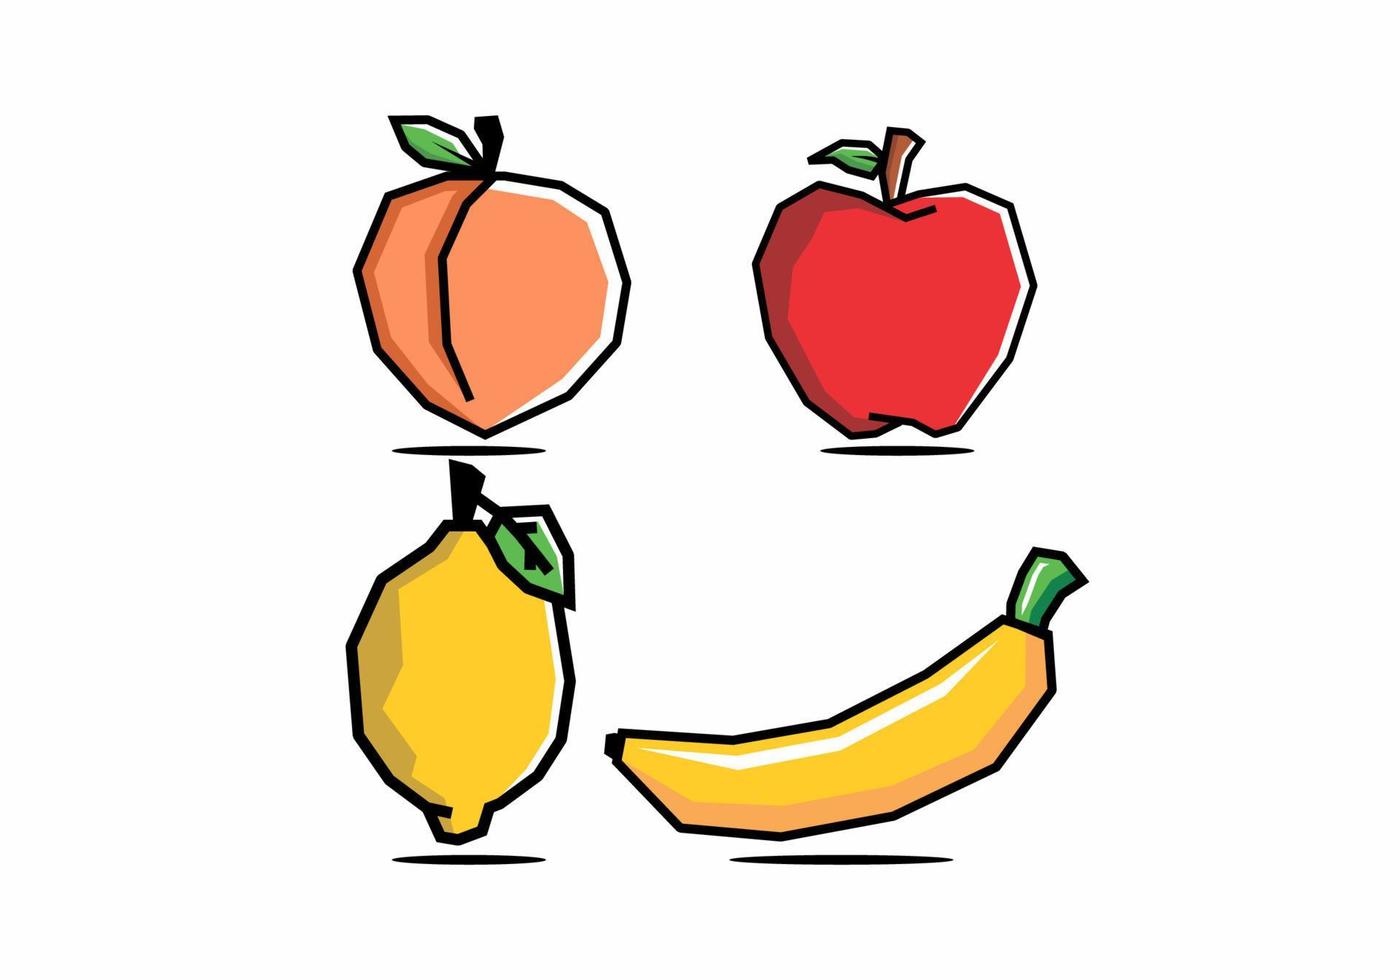 steifer Kunststil von Pfirsich, Apfel, Zitrusfrüchten und Bananen vektor